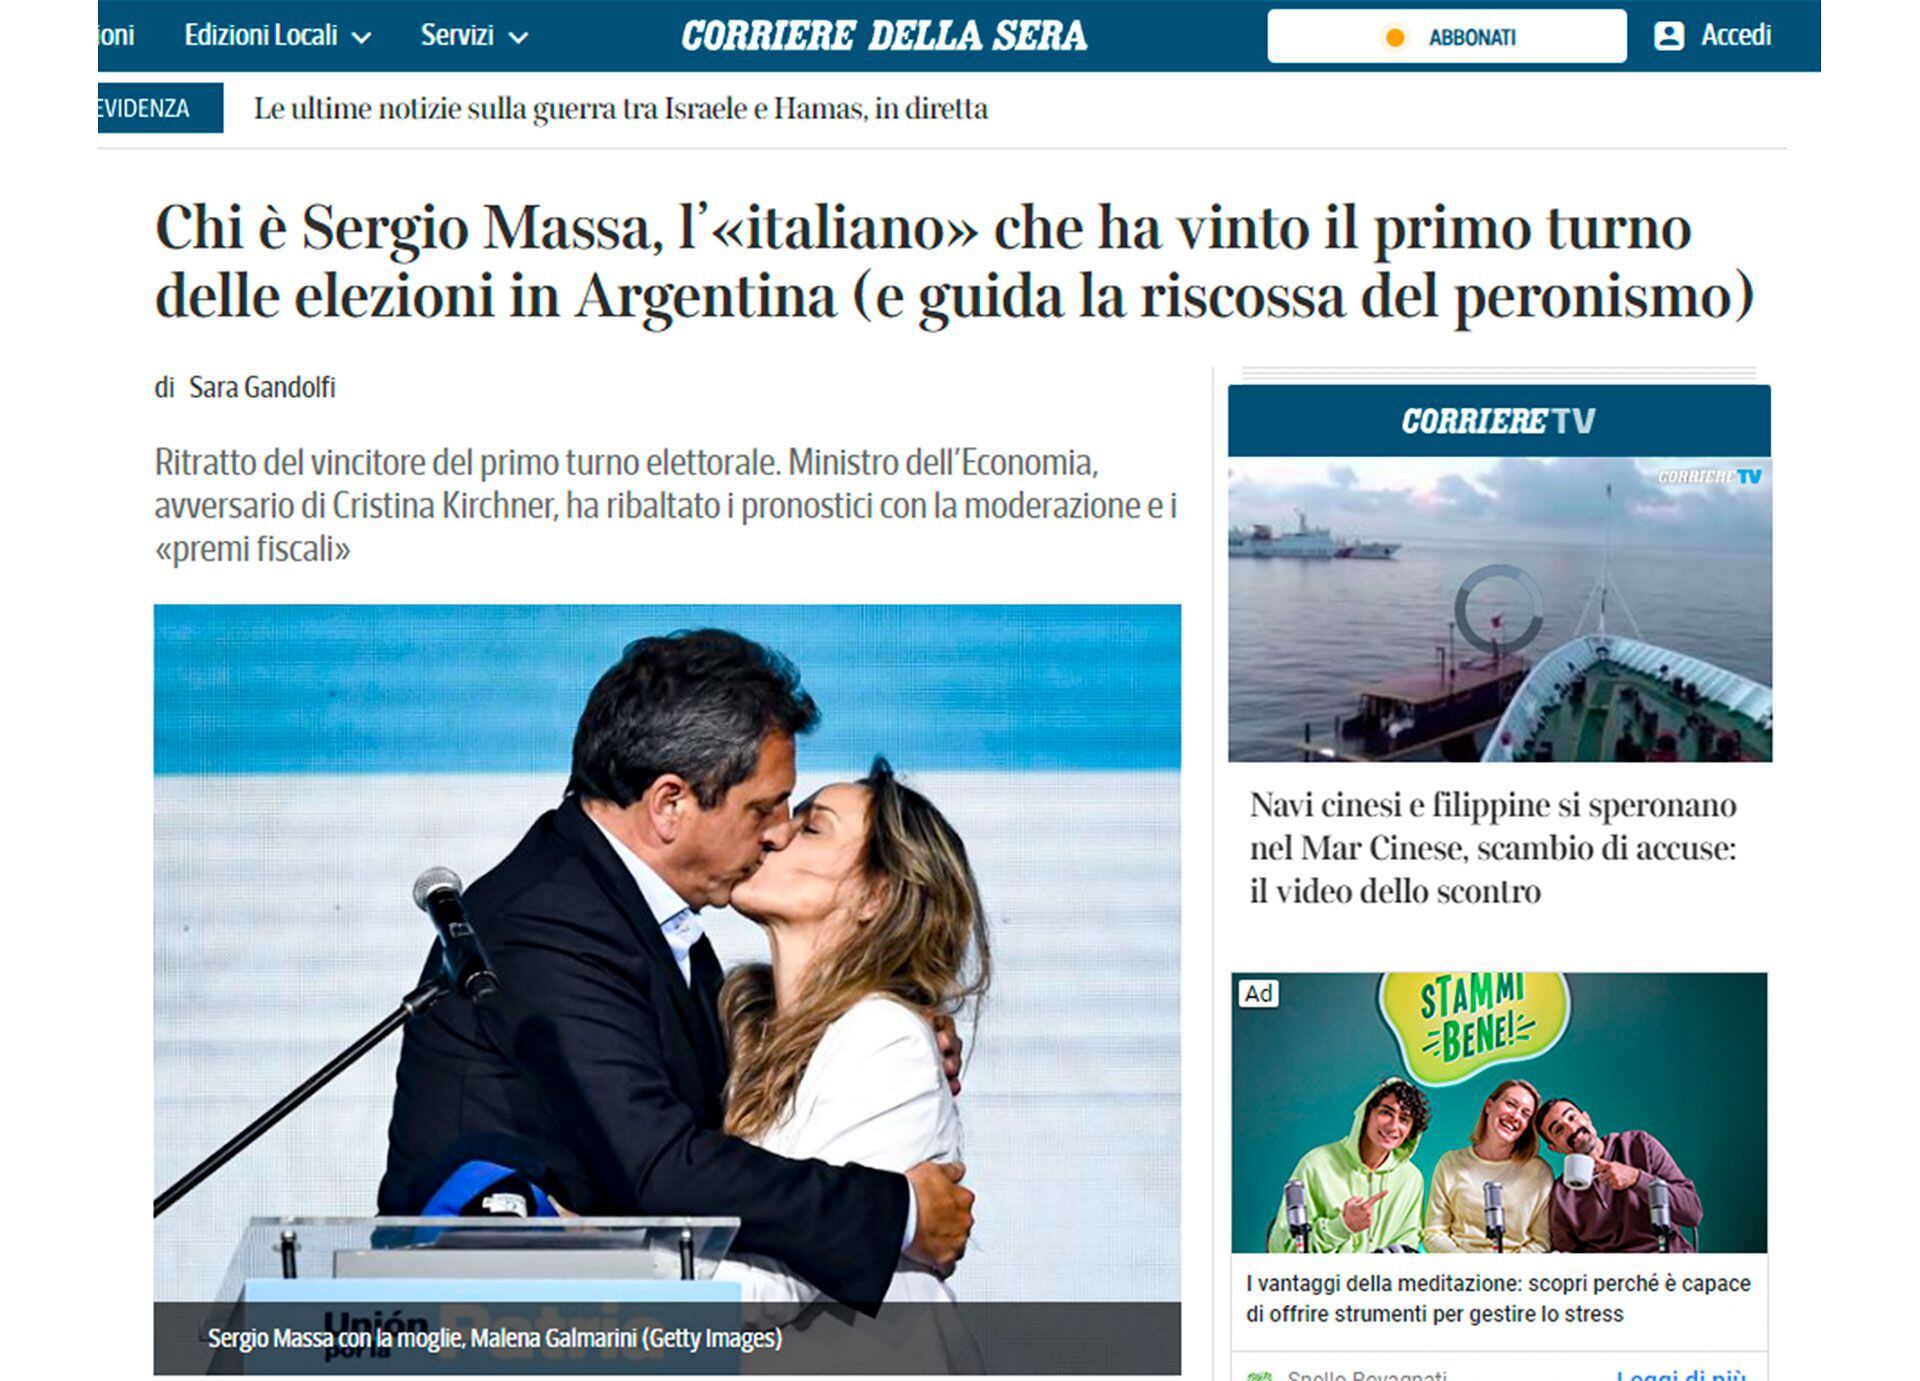 Massa es "el italiano' que guía el rescate del peronismo", según el Corriere della Sera